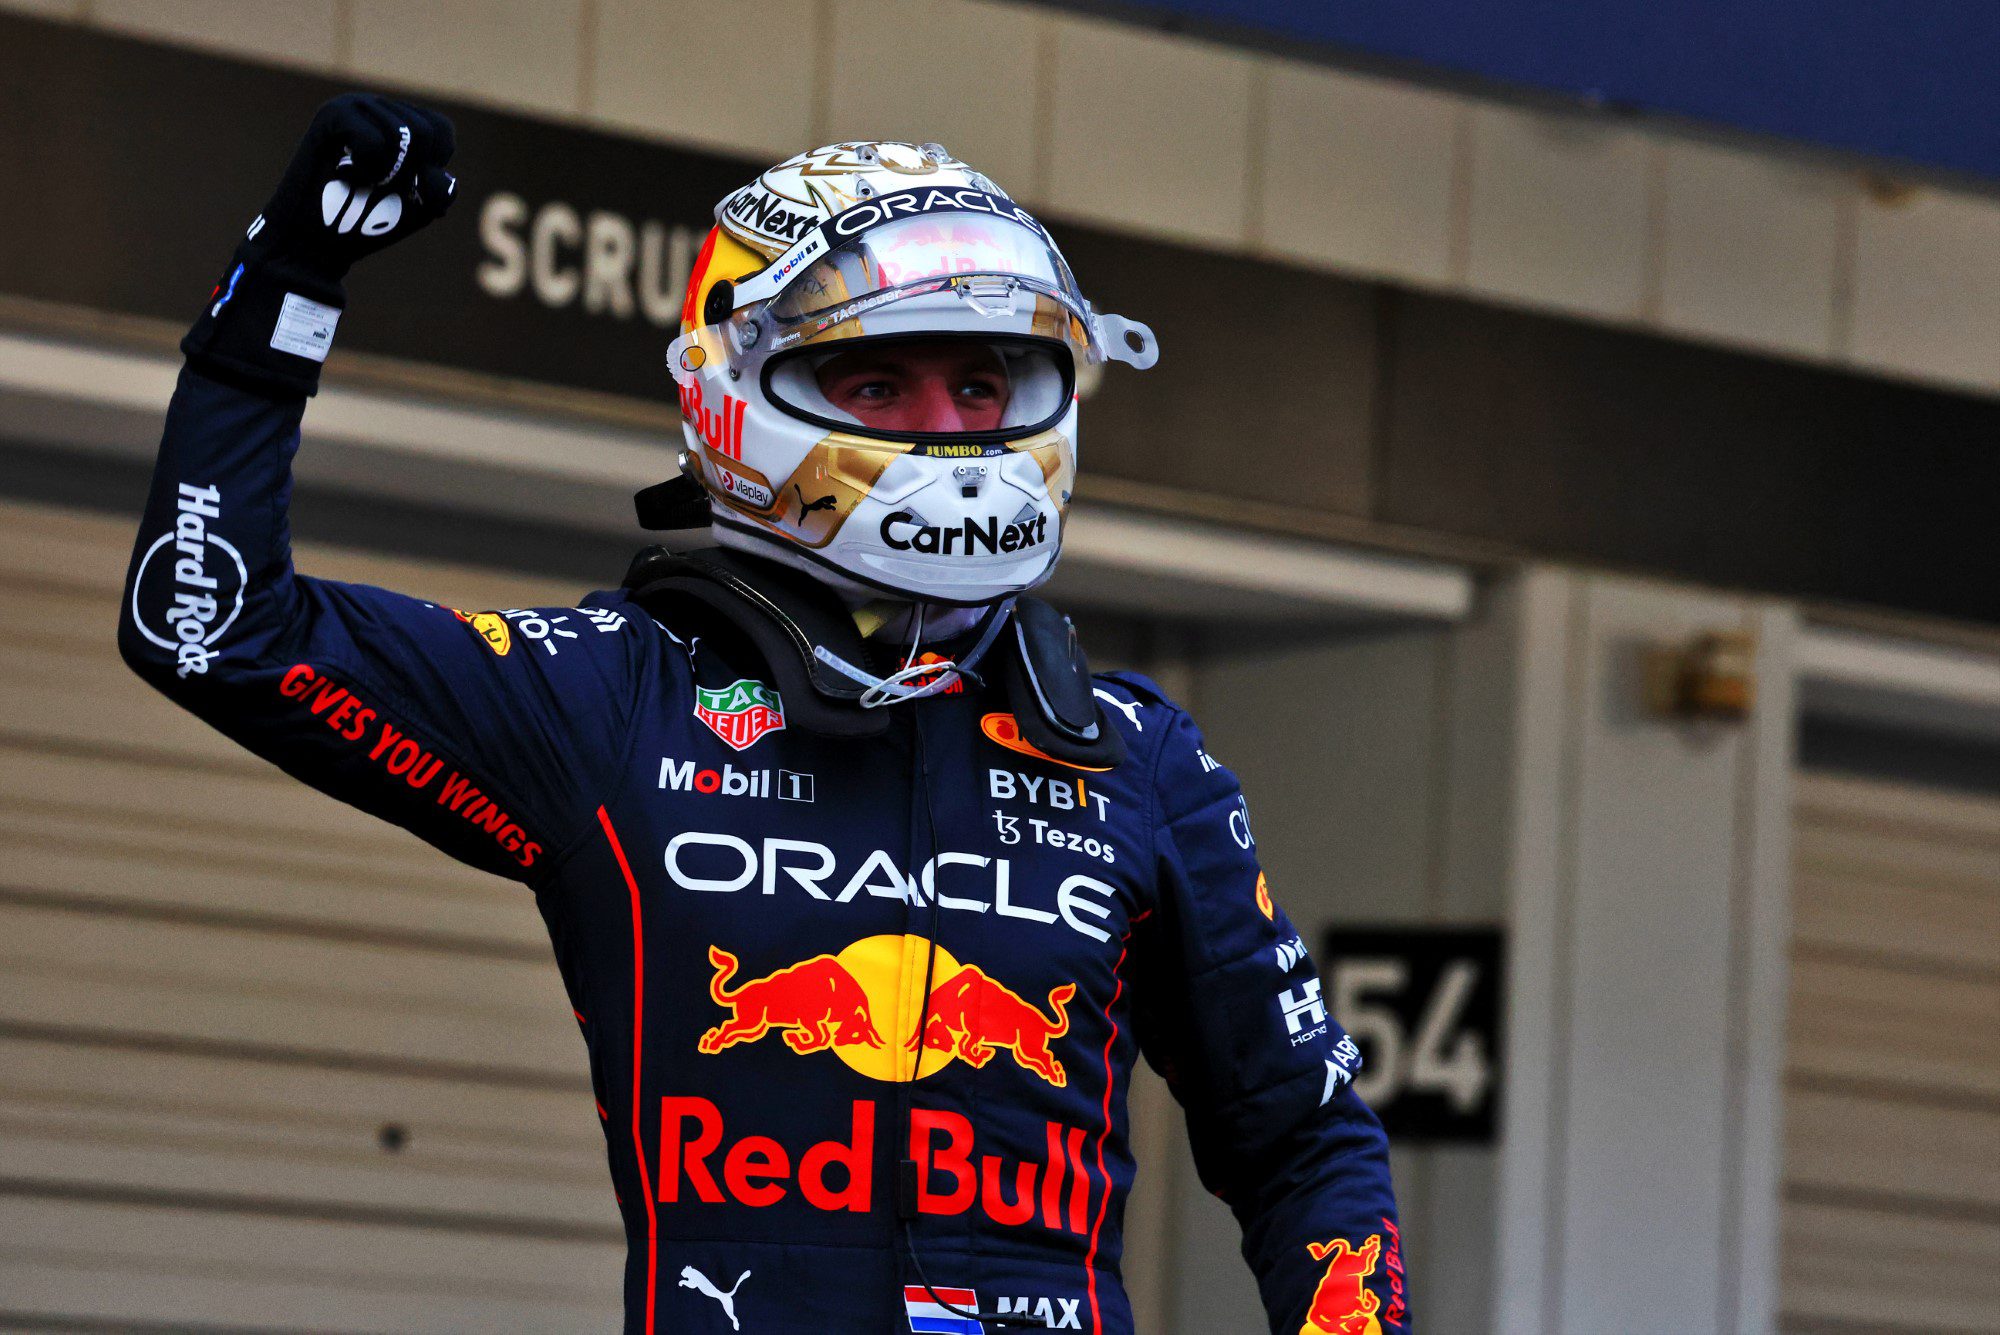 F1: Verstappen tendrá su ‘propio’ stand en el GP de España de 2023